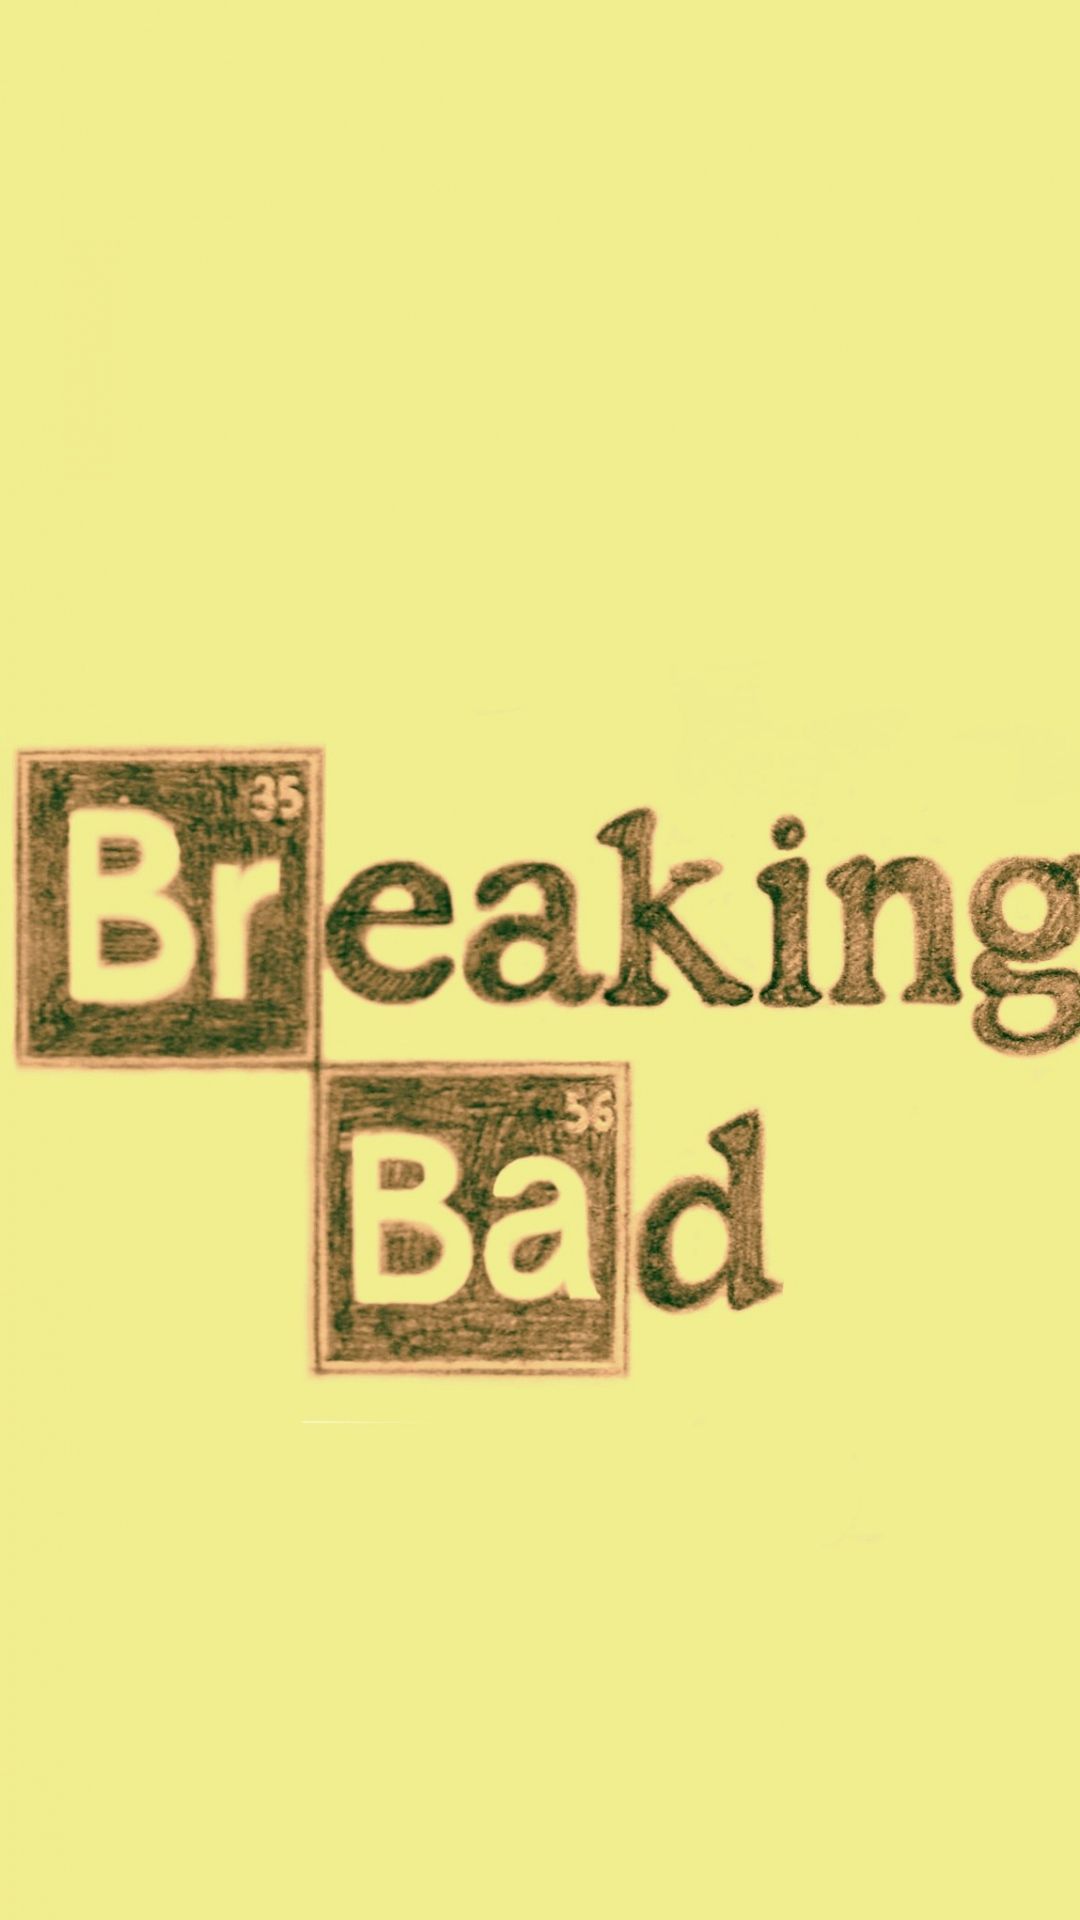 Breaking Bad iPhone 6 Wallpaper Download | iPhone Wallpapers, iPad ...